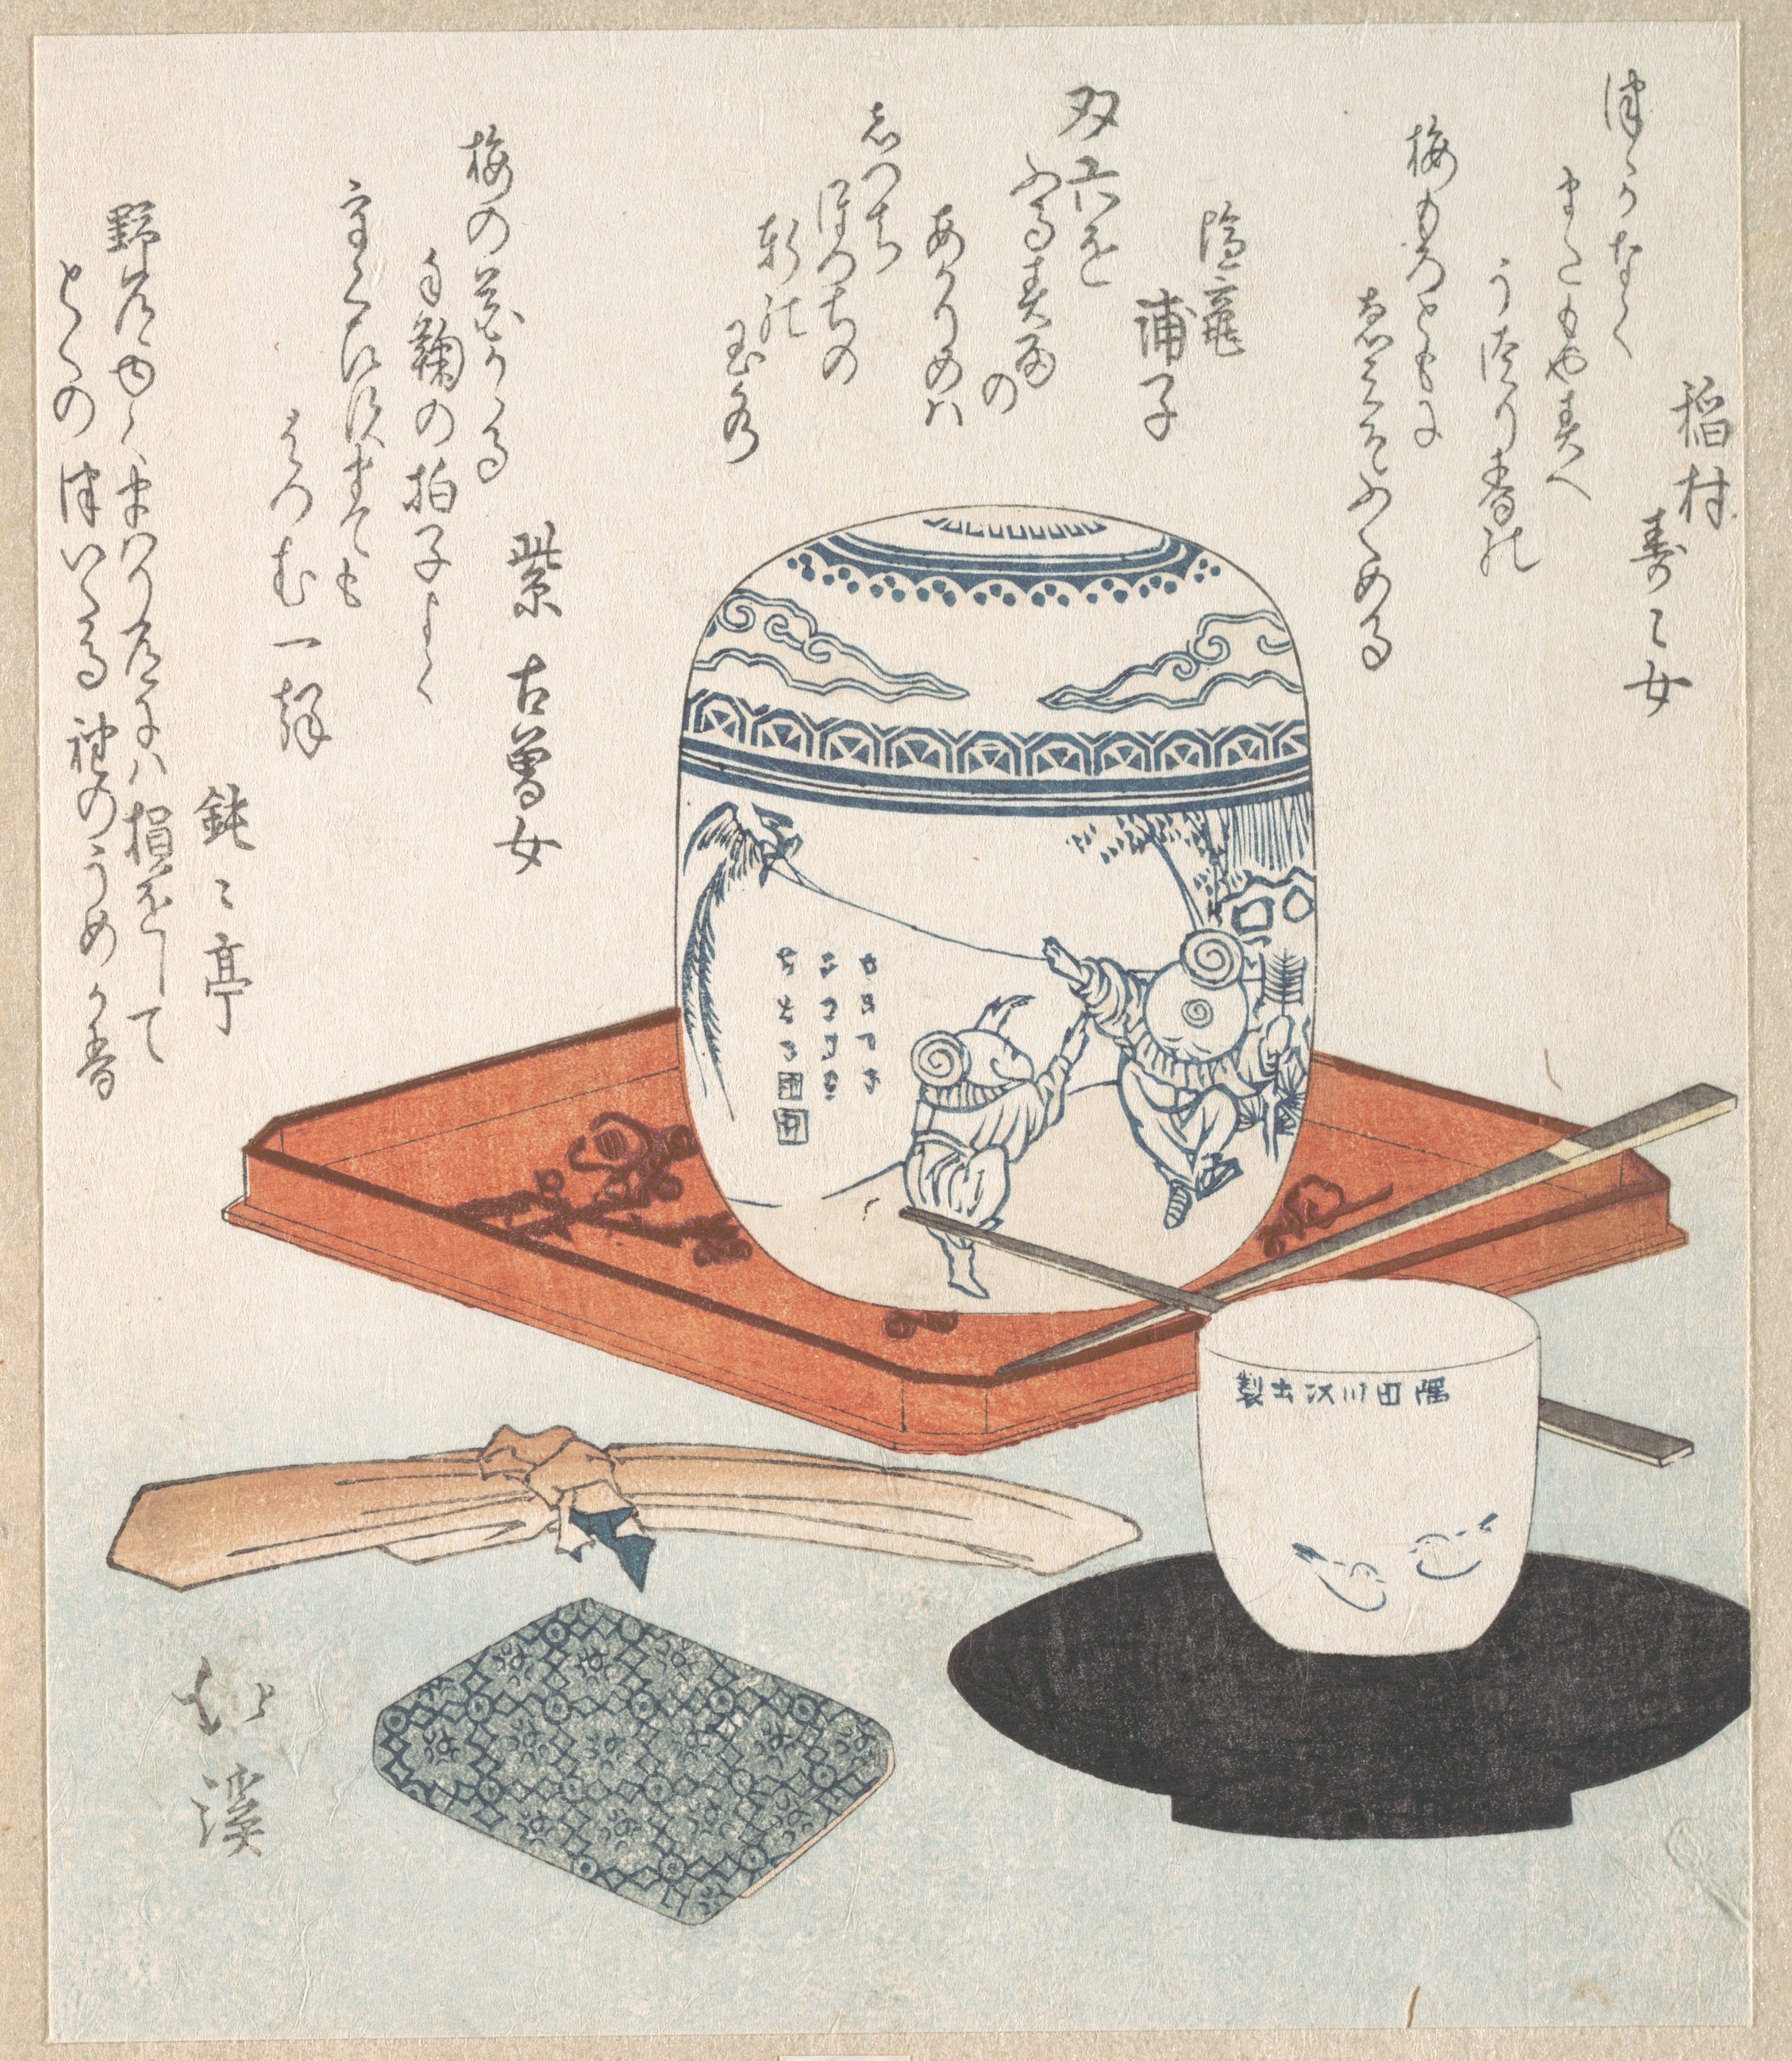 Предмети за чај by Totoya Hokkei - 19. век - 19,7 x 16,7 cm 